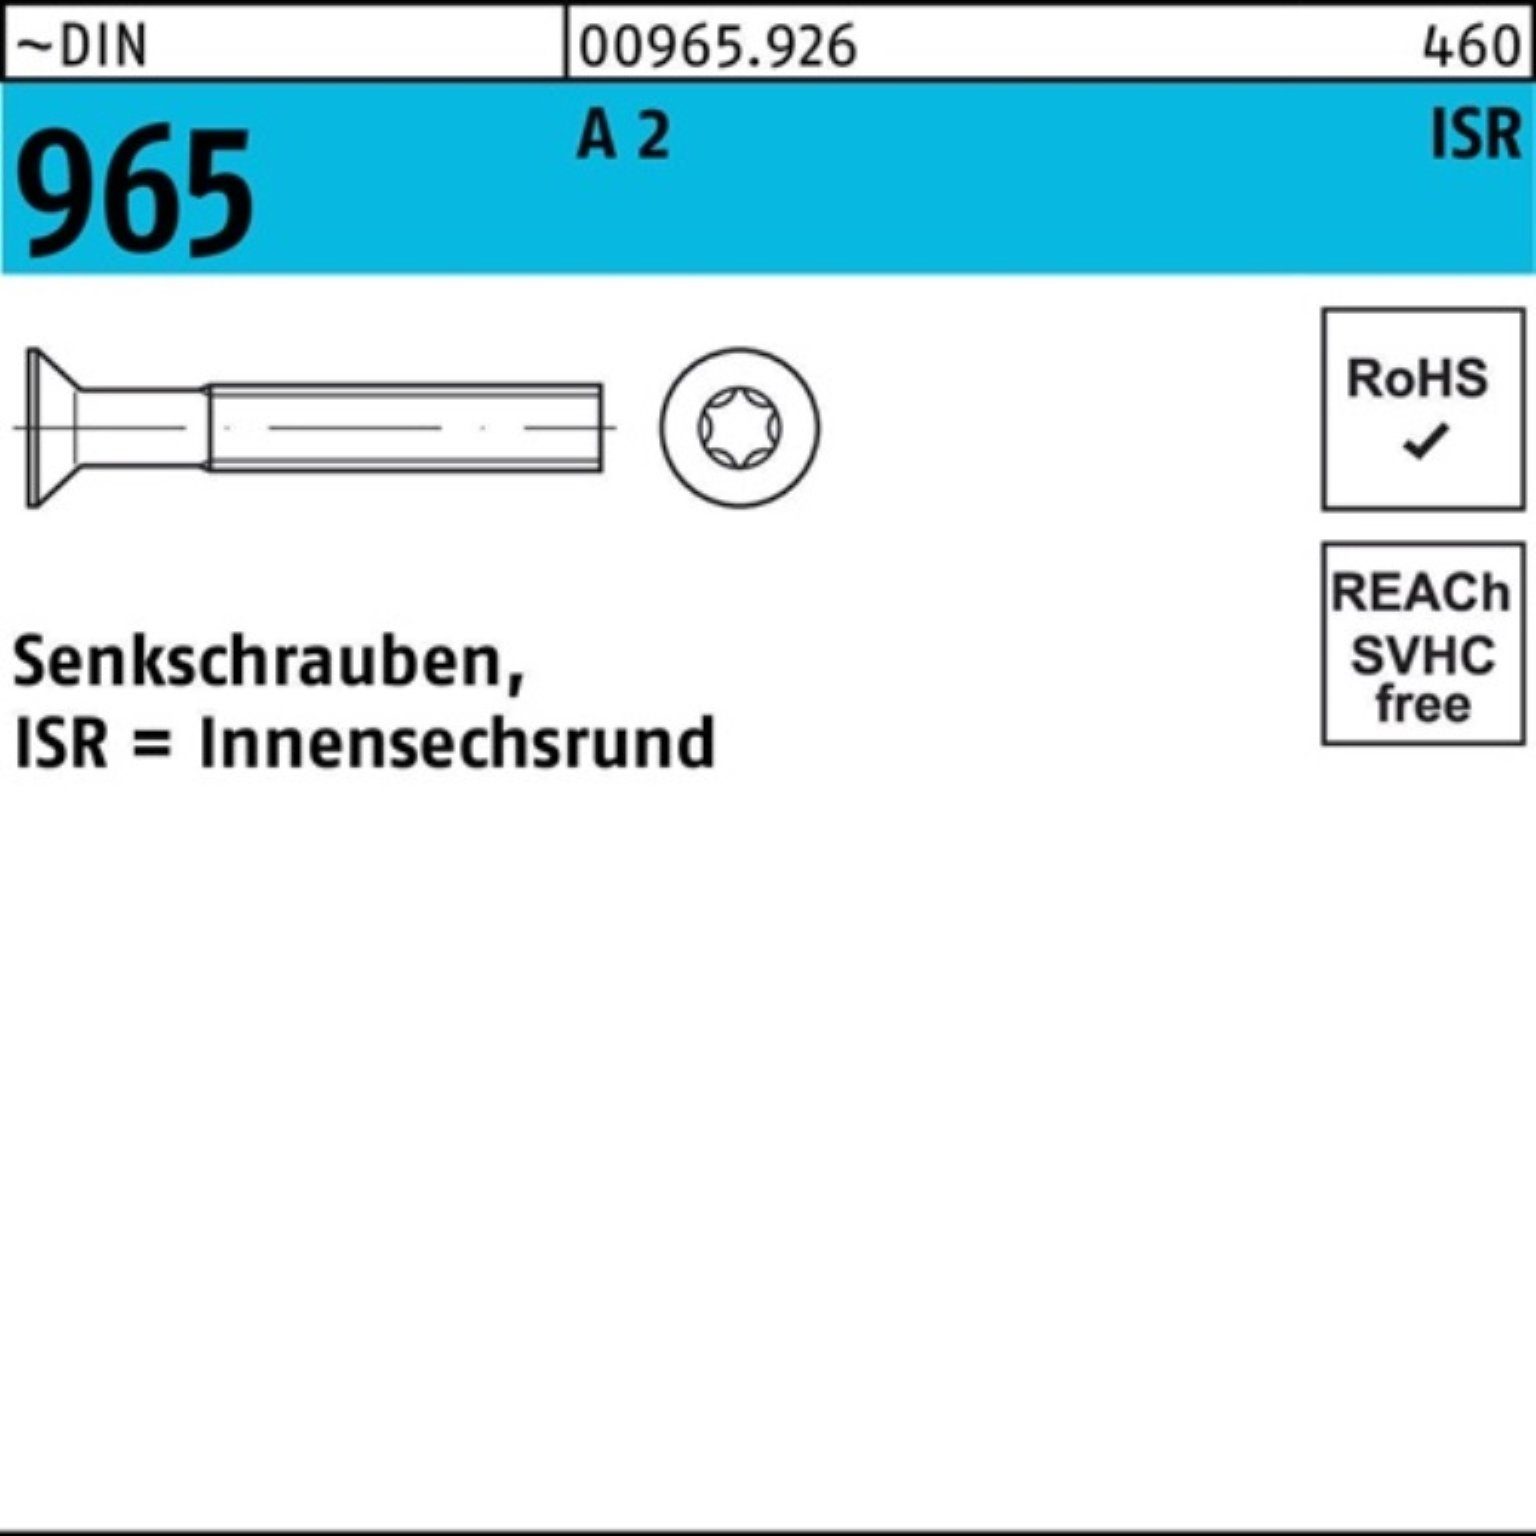 Senkschraube ~DIN 1000 96 Pack 8-T20 1000er Reyher 965 A Stück M4x 2 ISR DIN Senkschraube